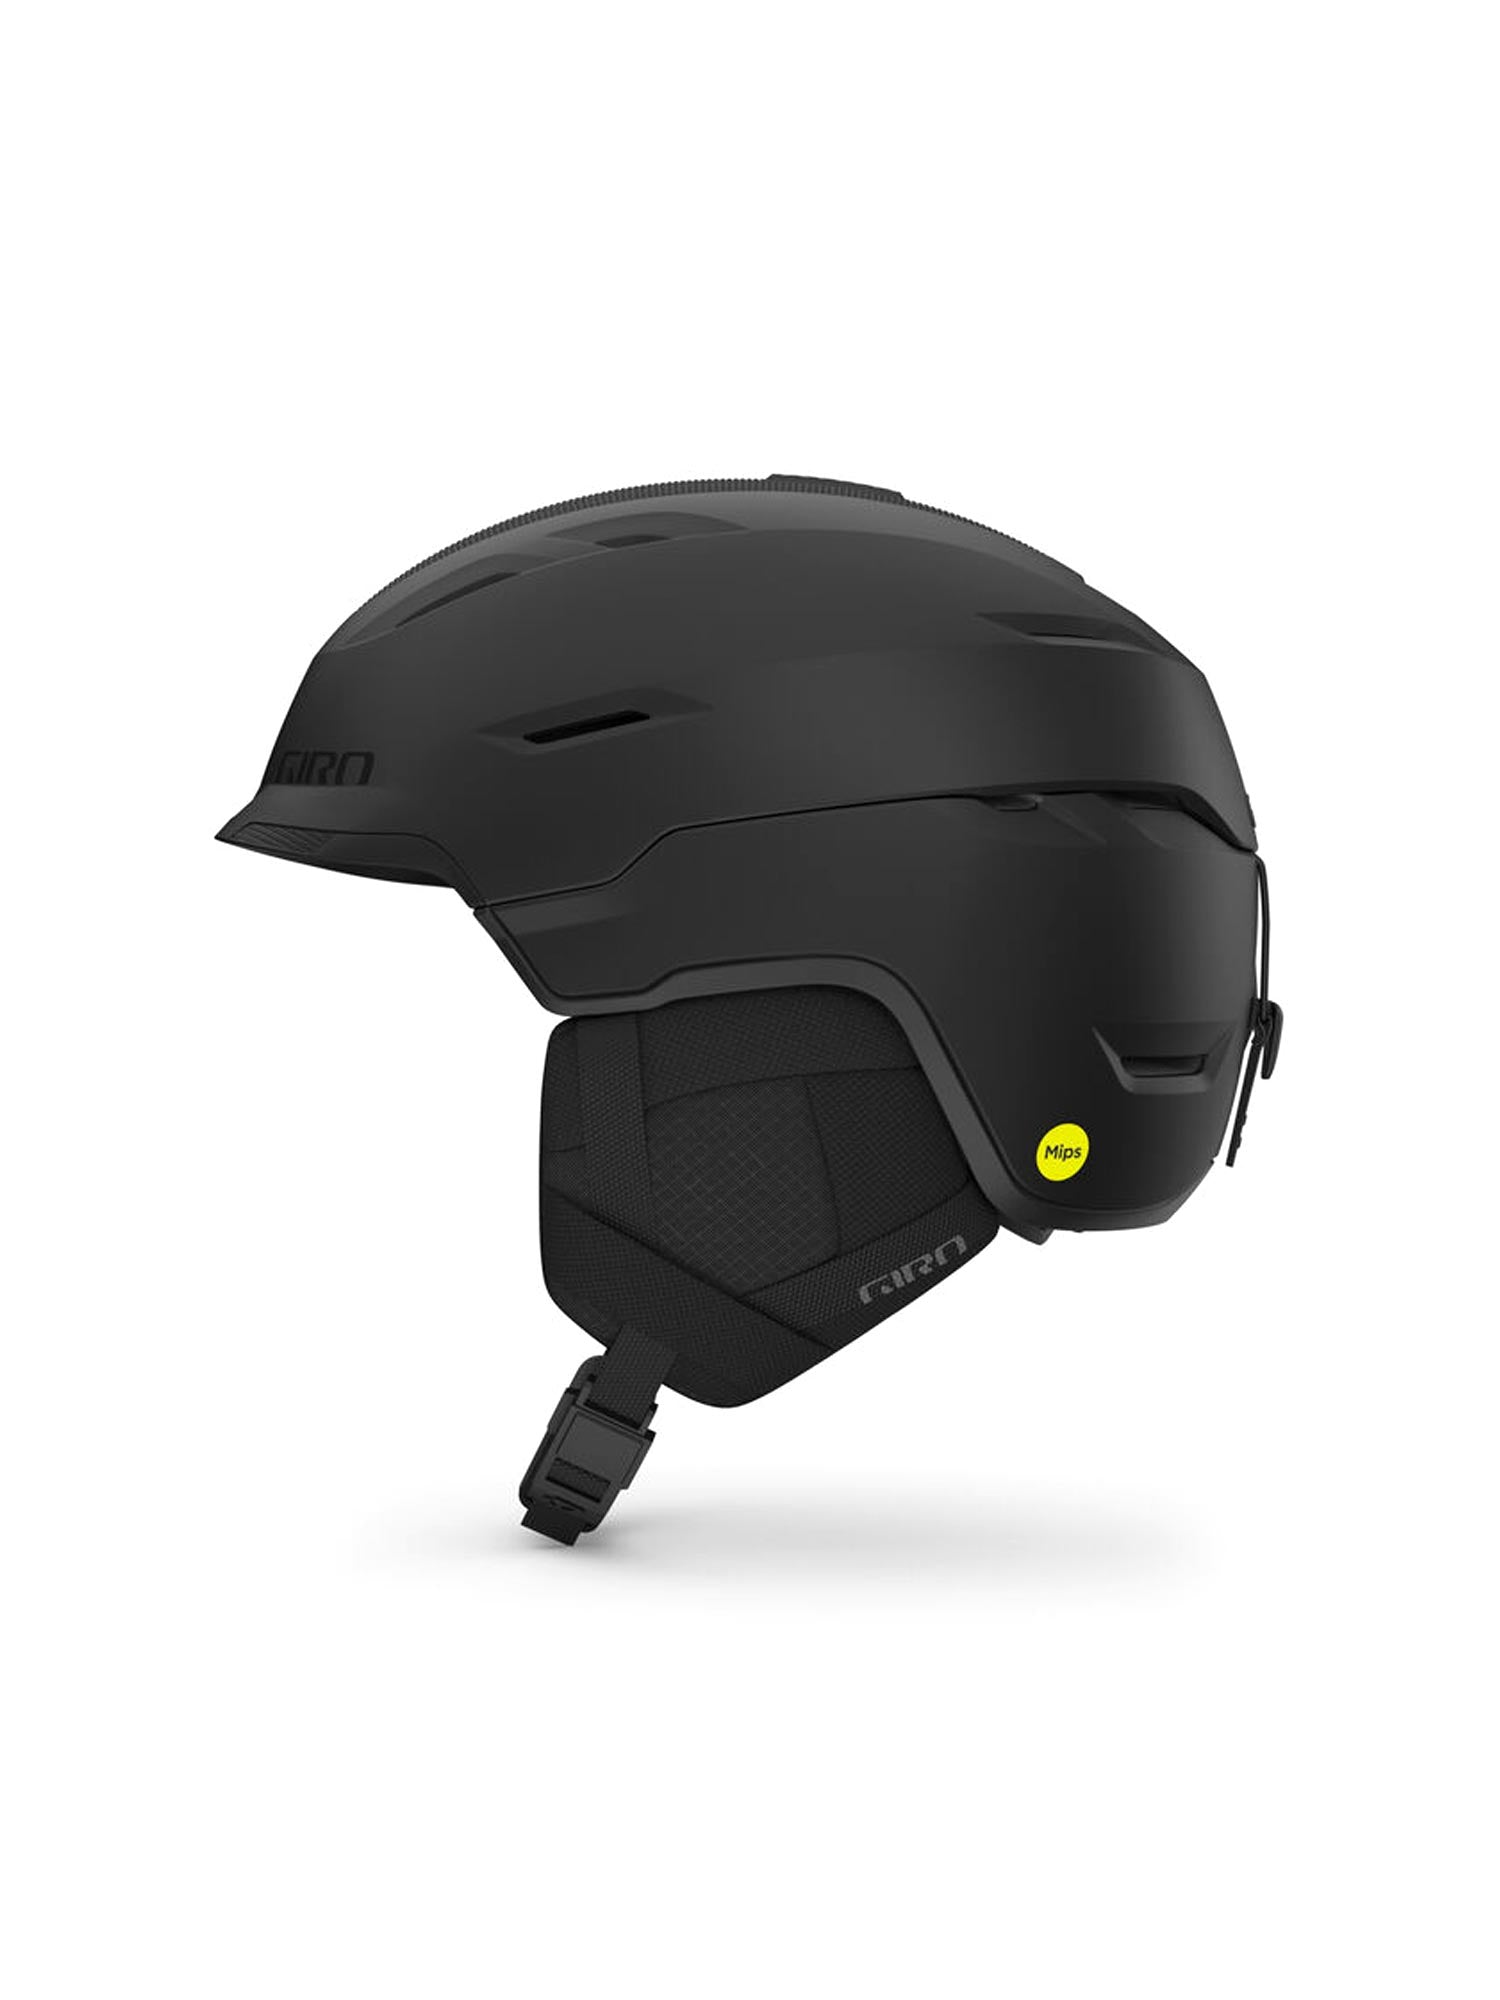 men's Giro Tor Spherical ski/snowboard helmet, black